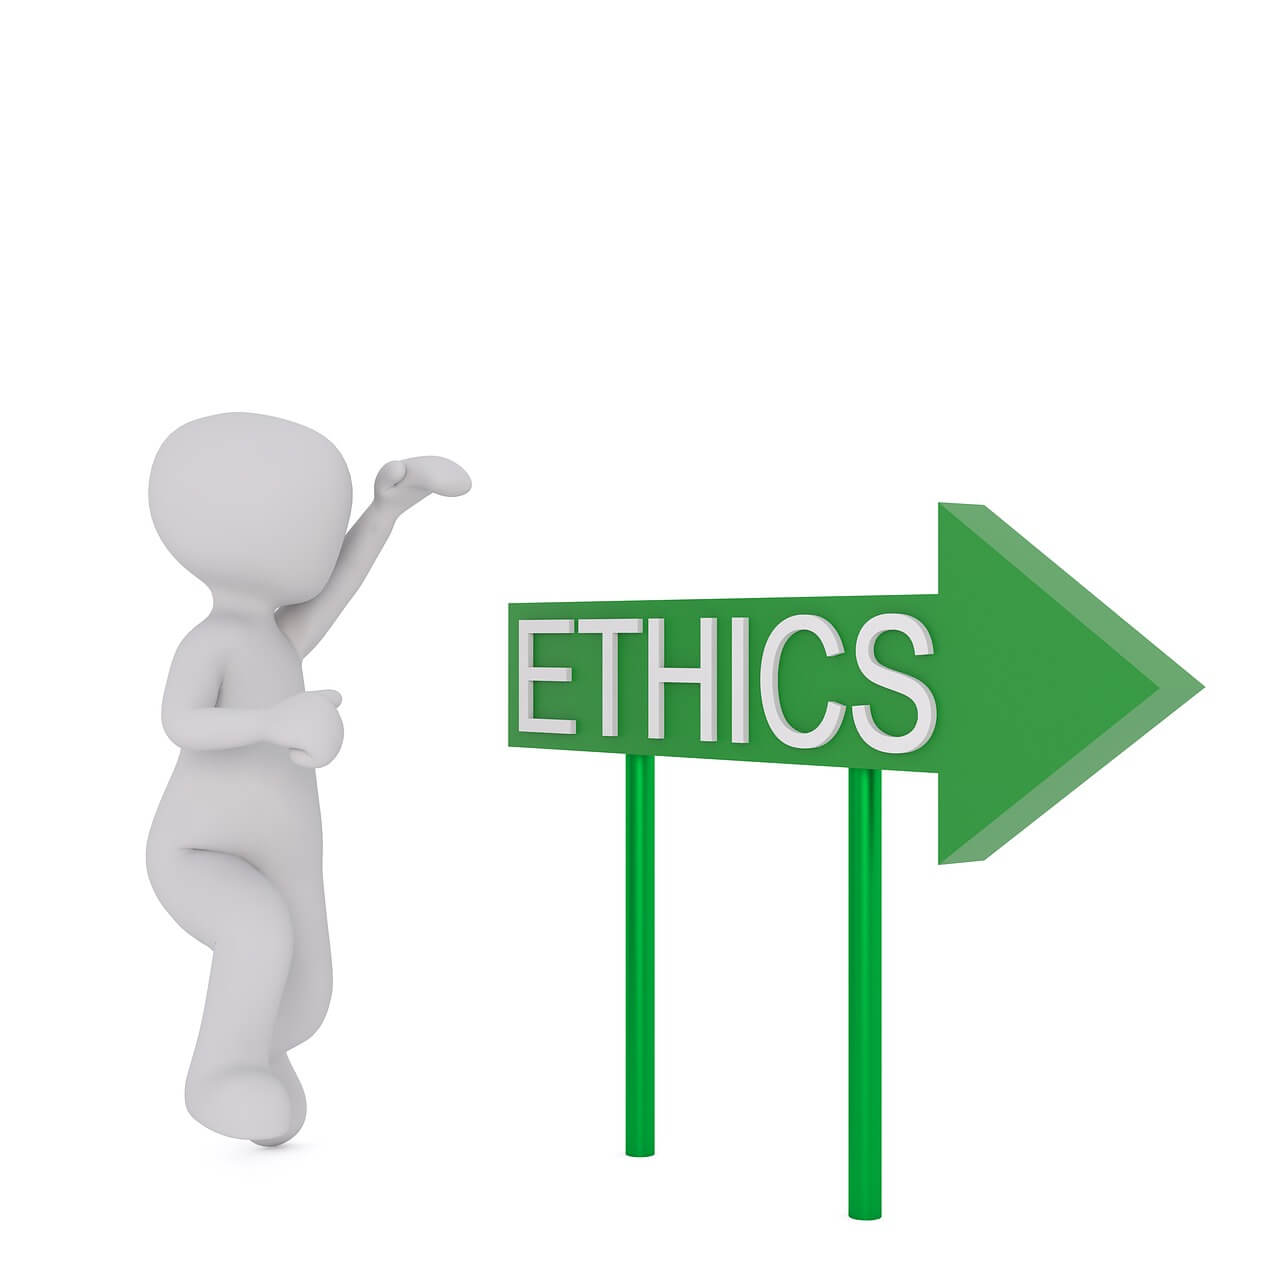 Ethics signage